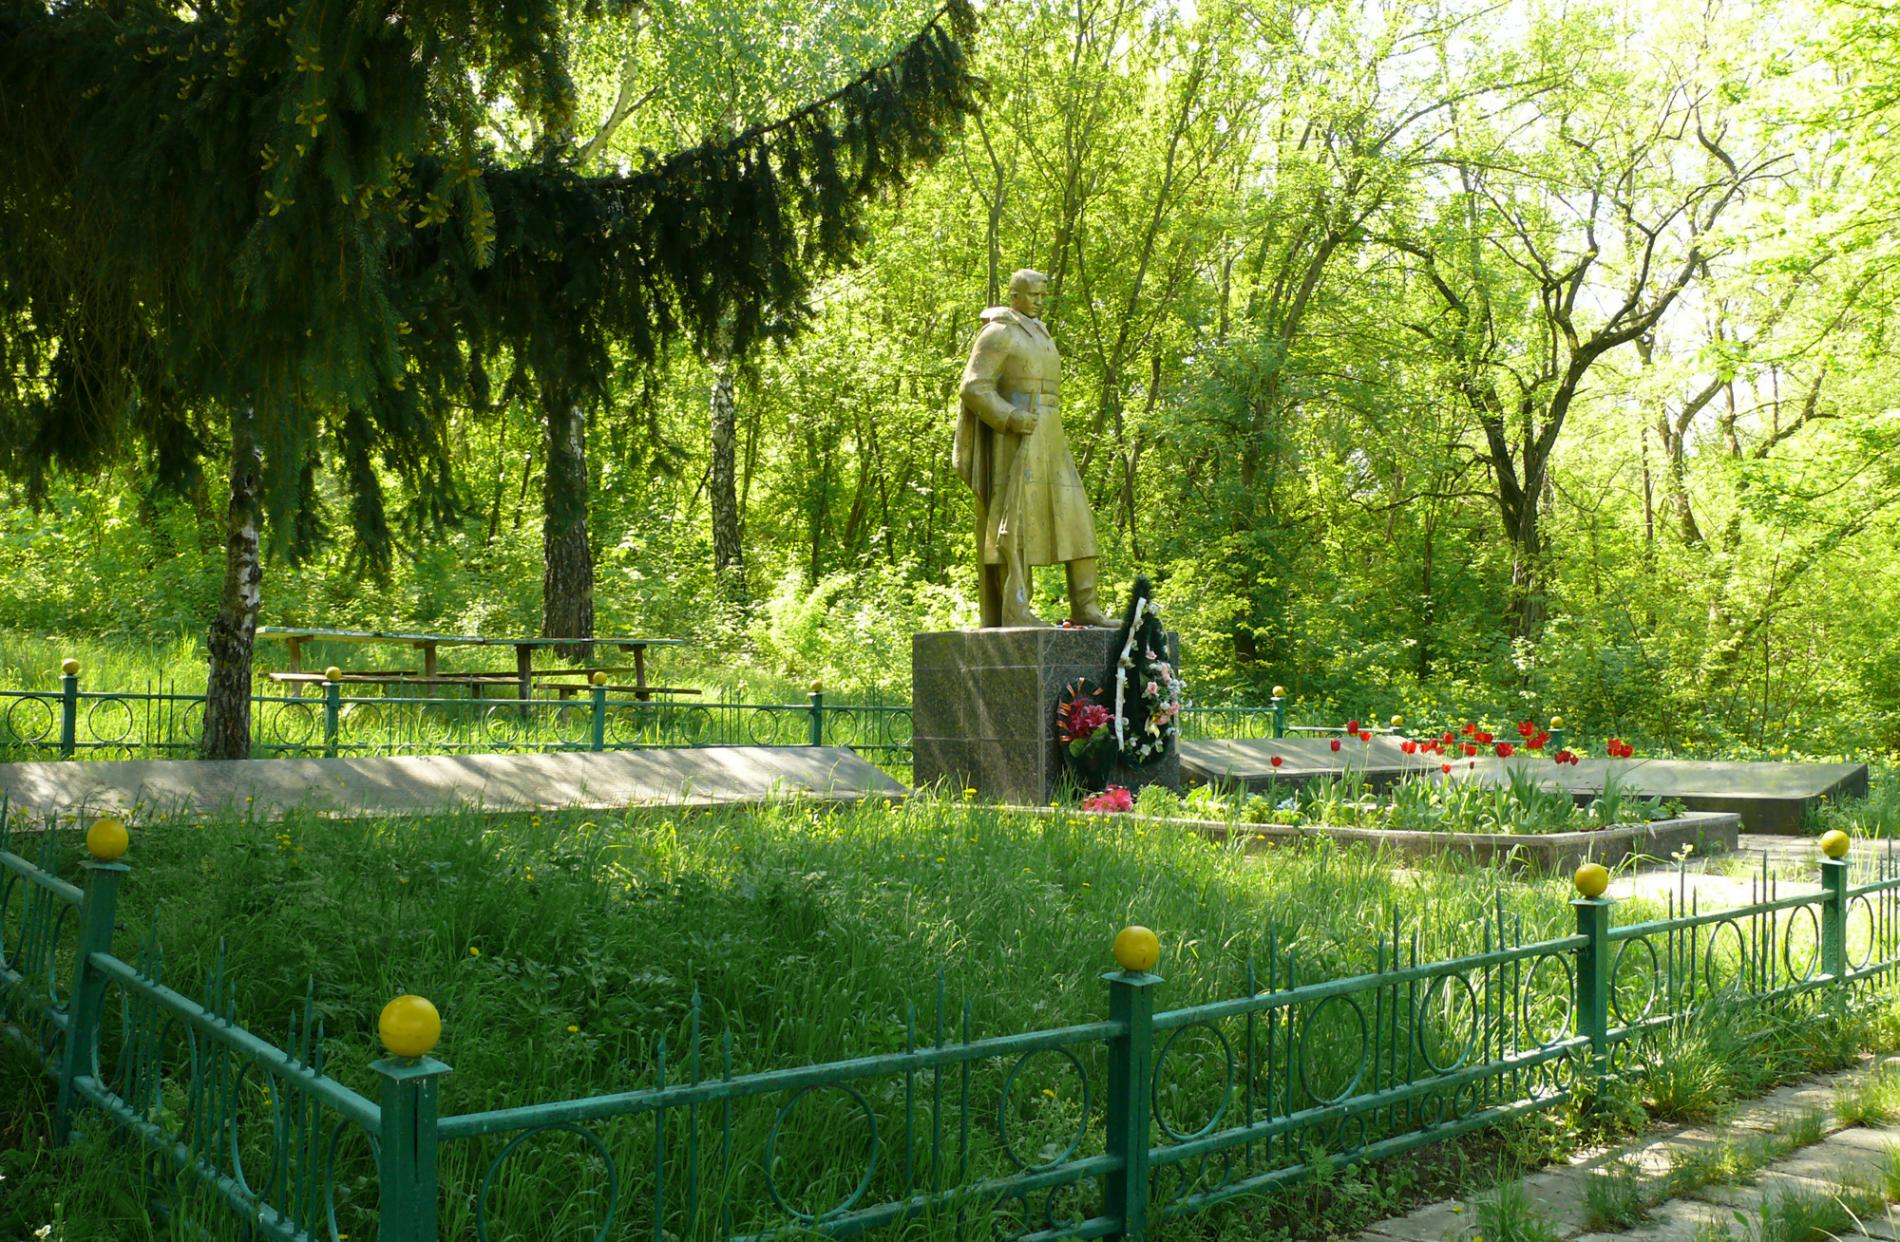 Братская могила в с. Ромашки Мироновского района